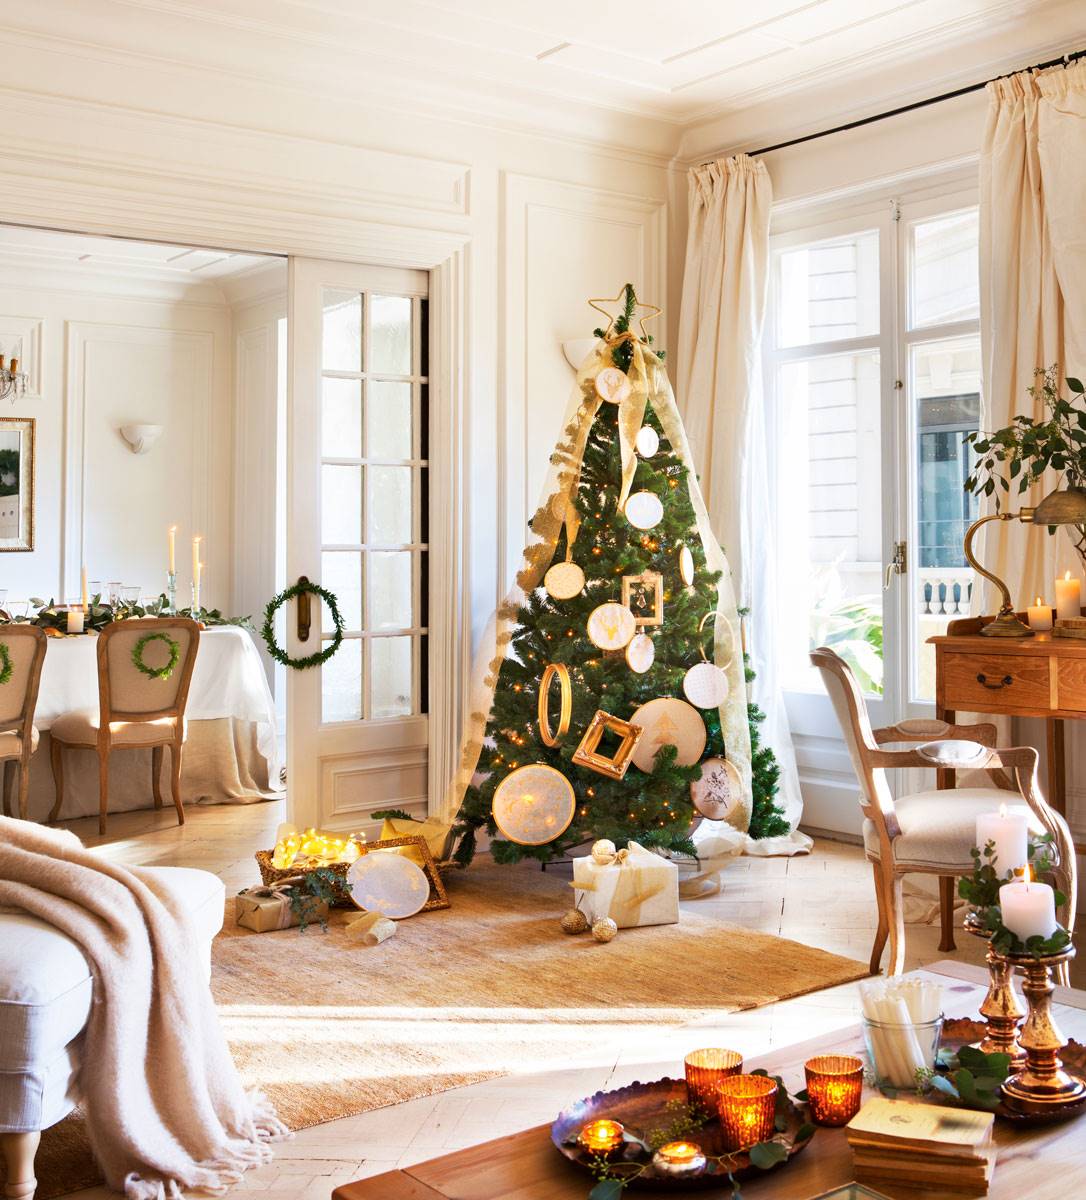 Salón clásico con alfombra de fibras, cortinas beige y árbol de Navidad decorado con bastidores y marcos.